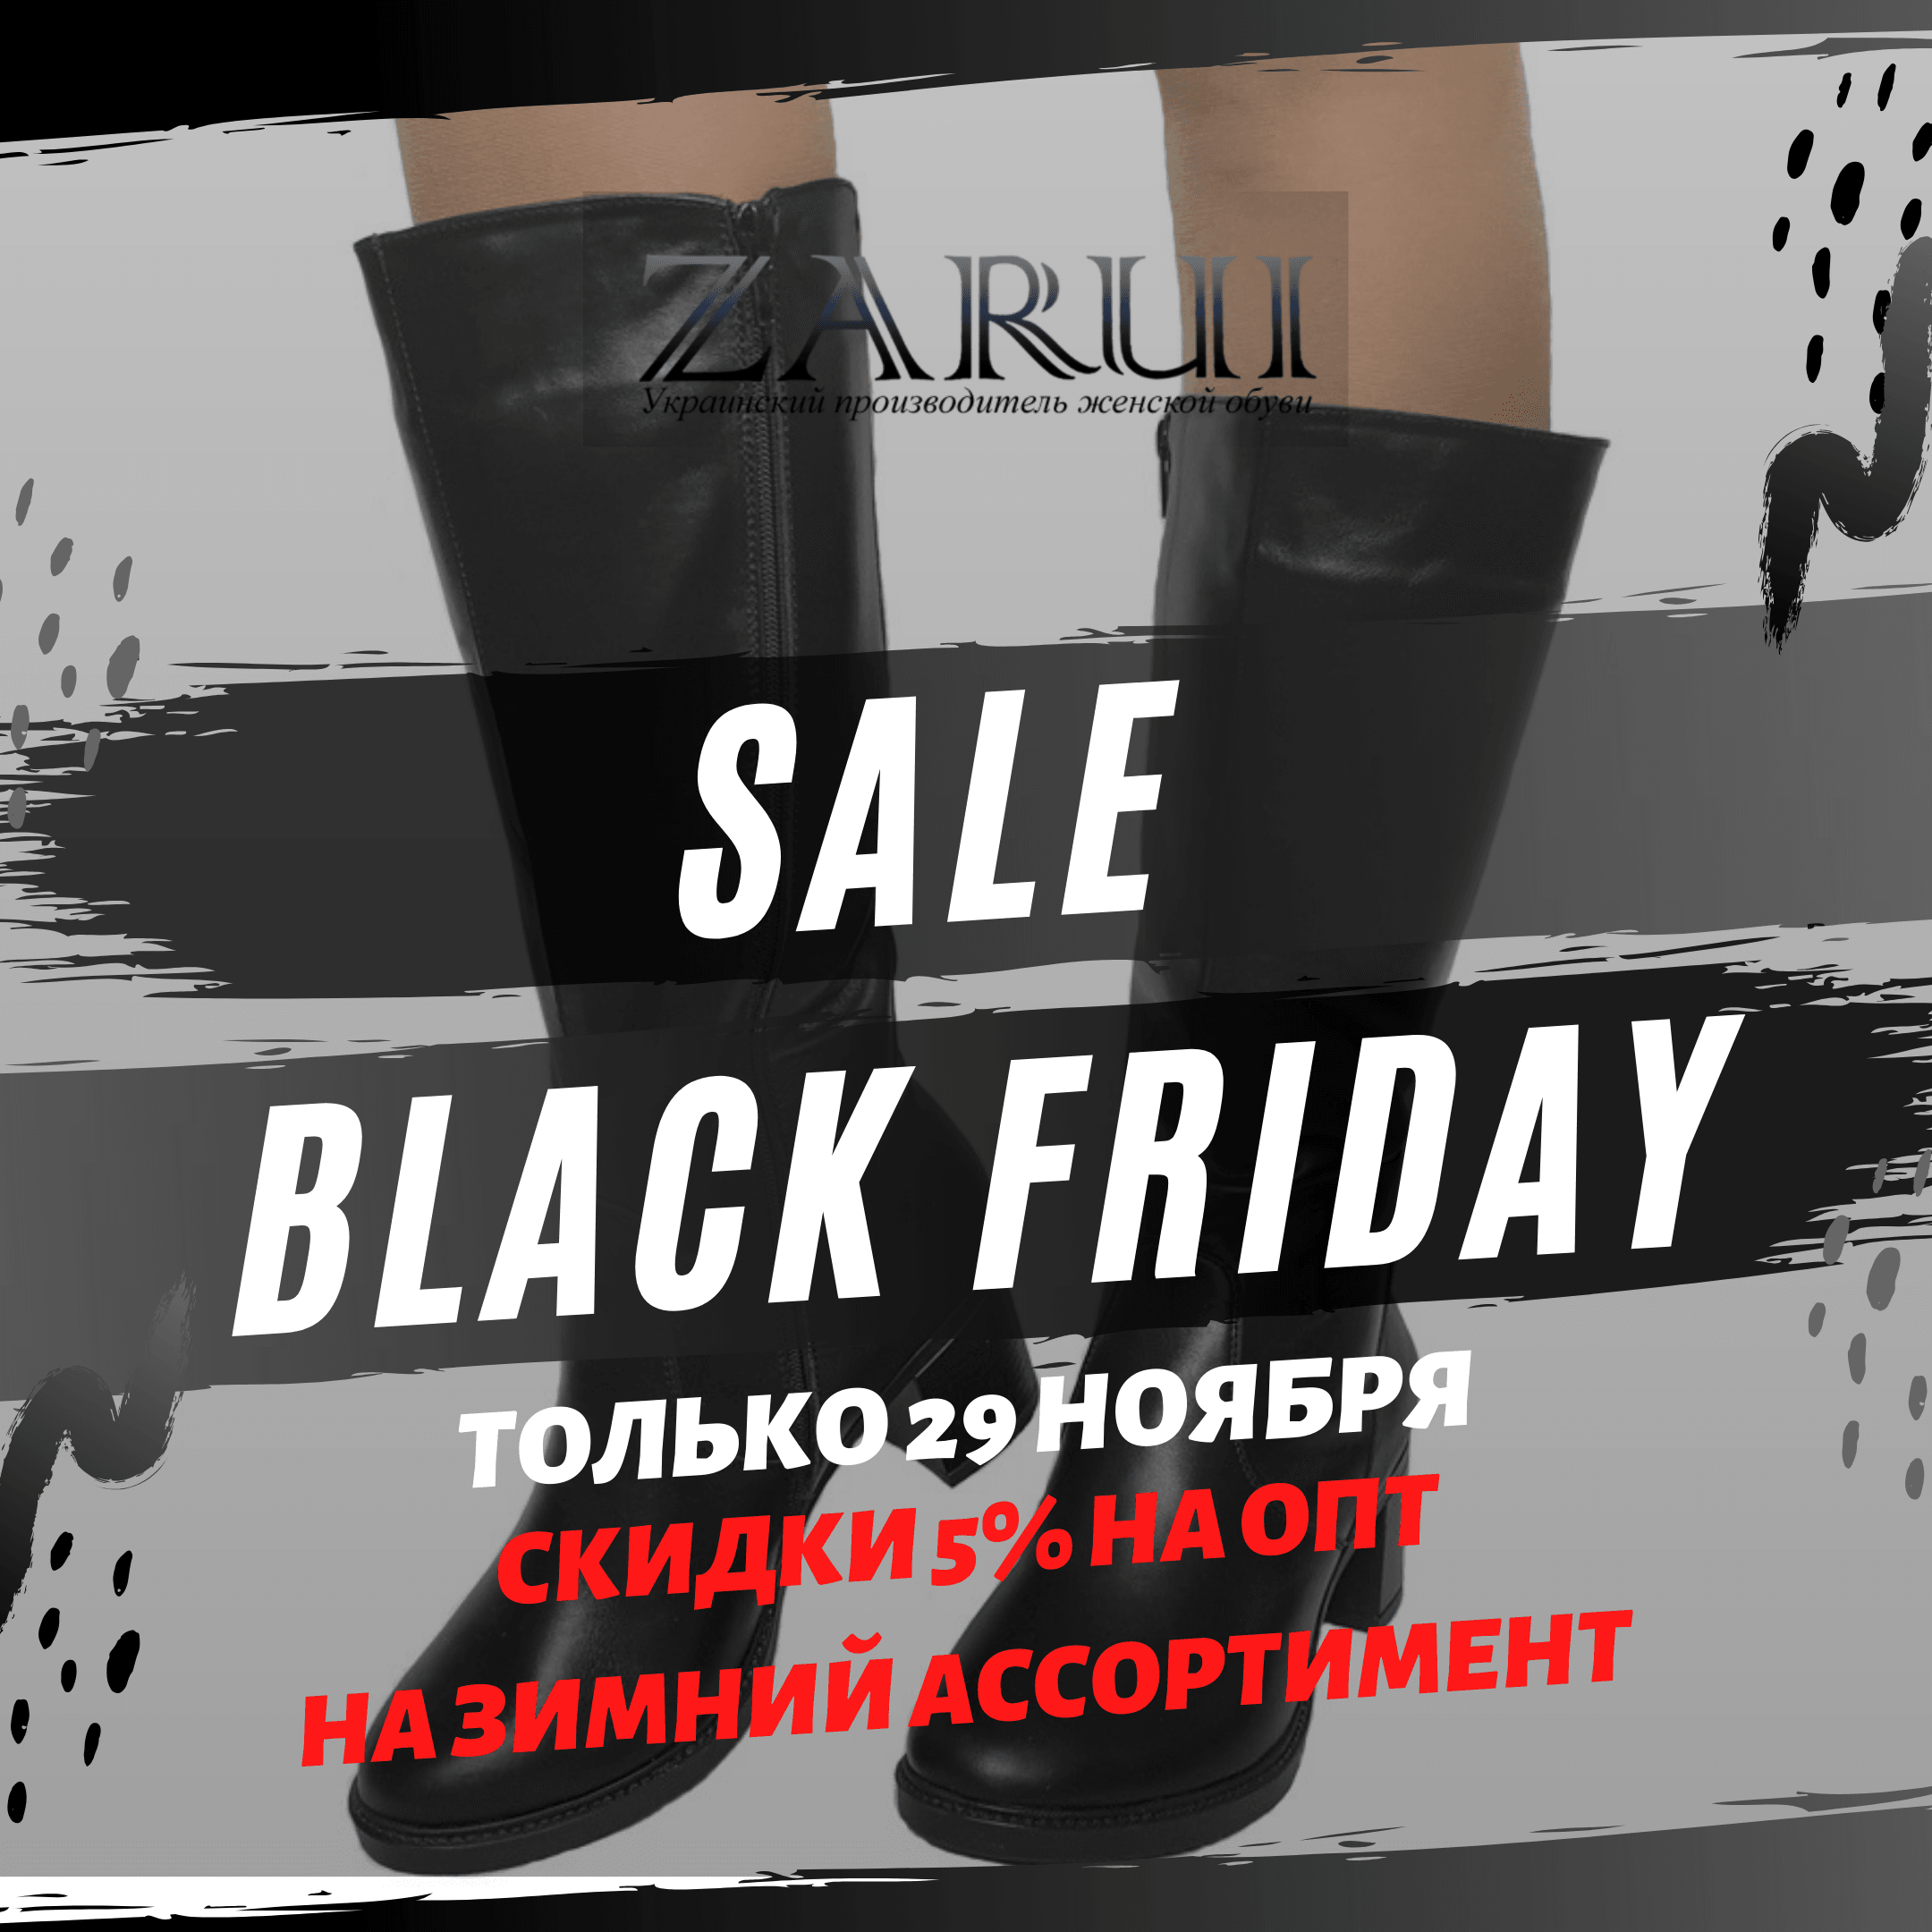 BLACK FRIDAY от обувной фабрики ZARUI - украинского производителя